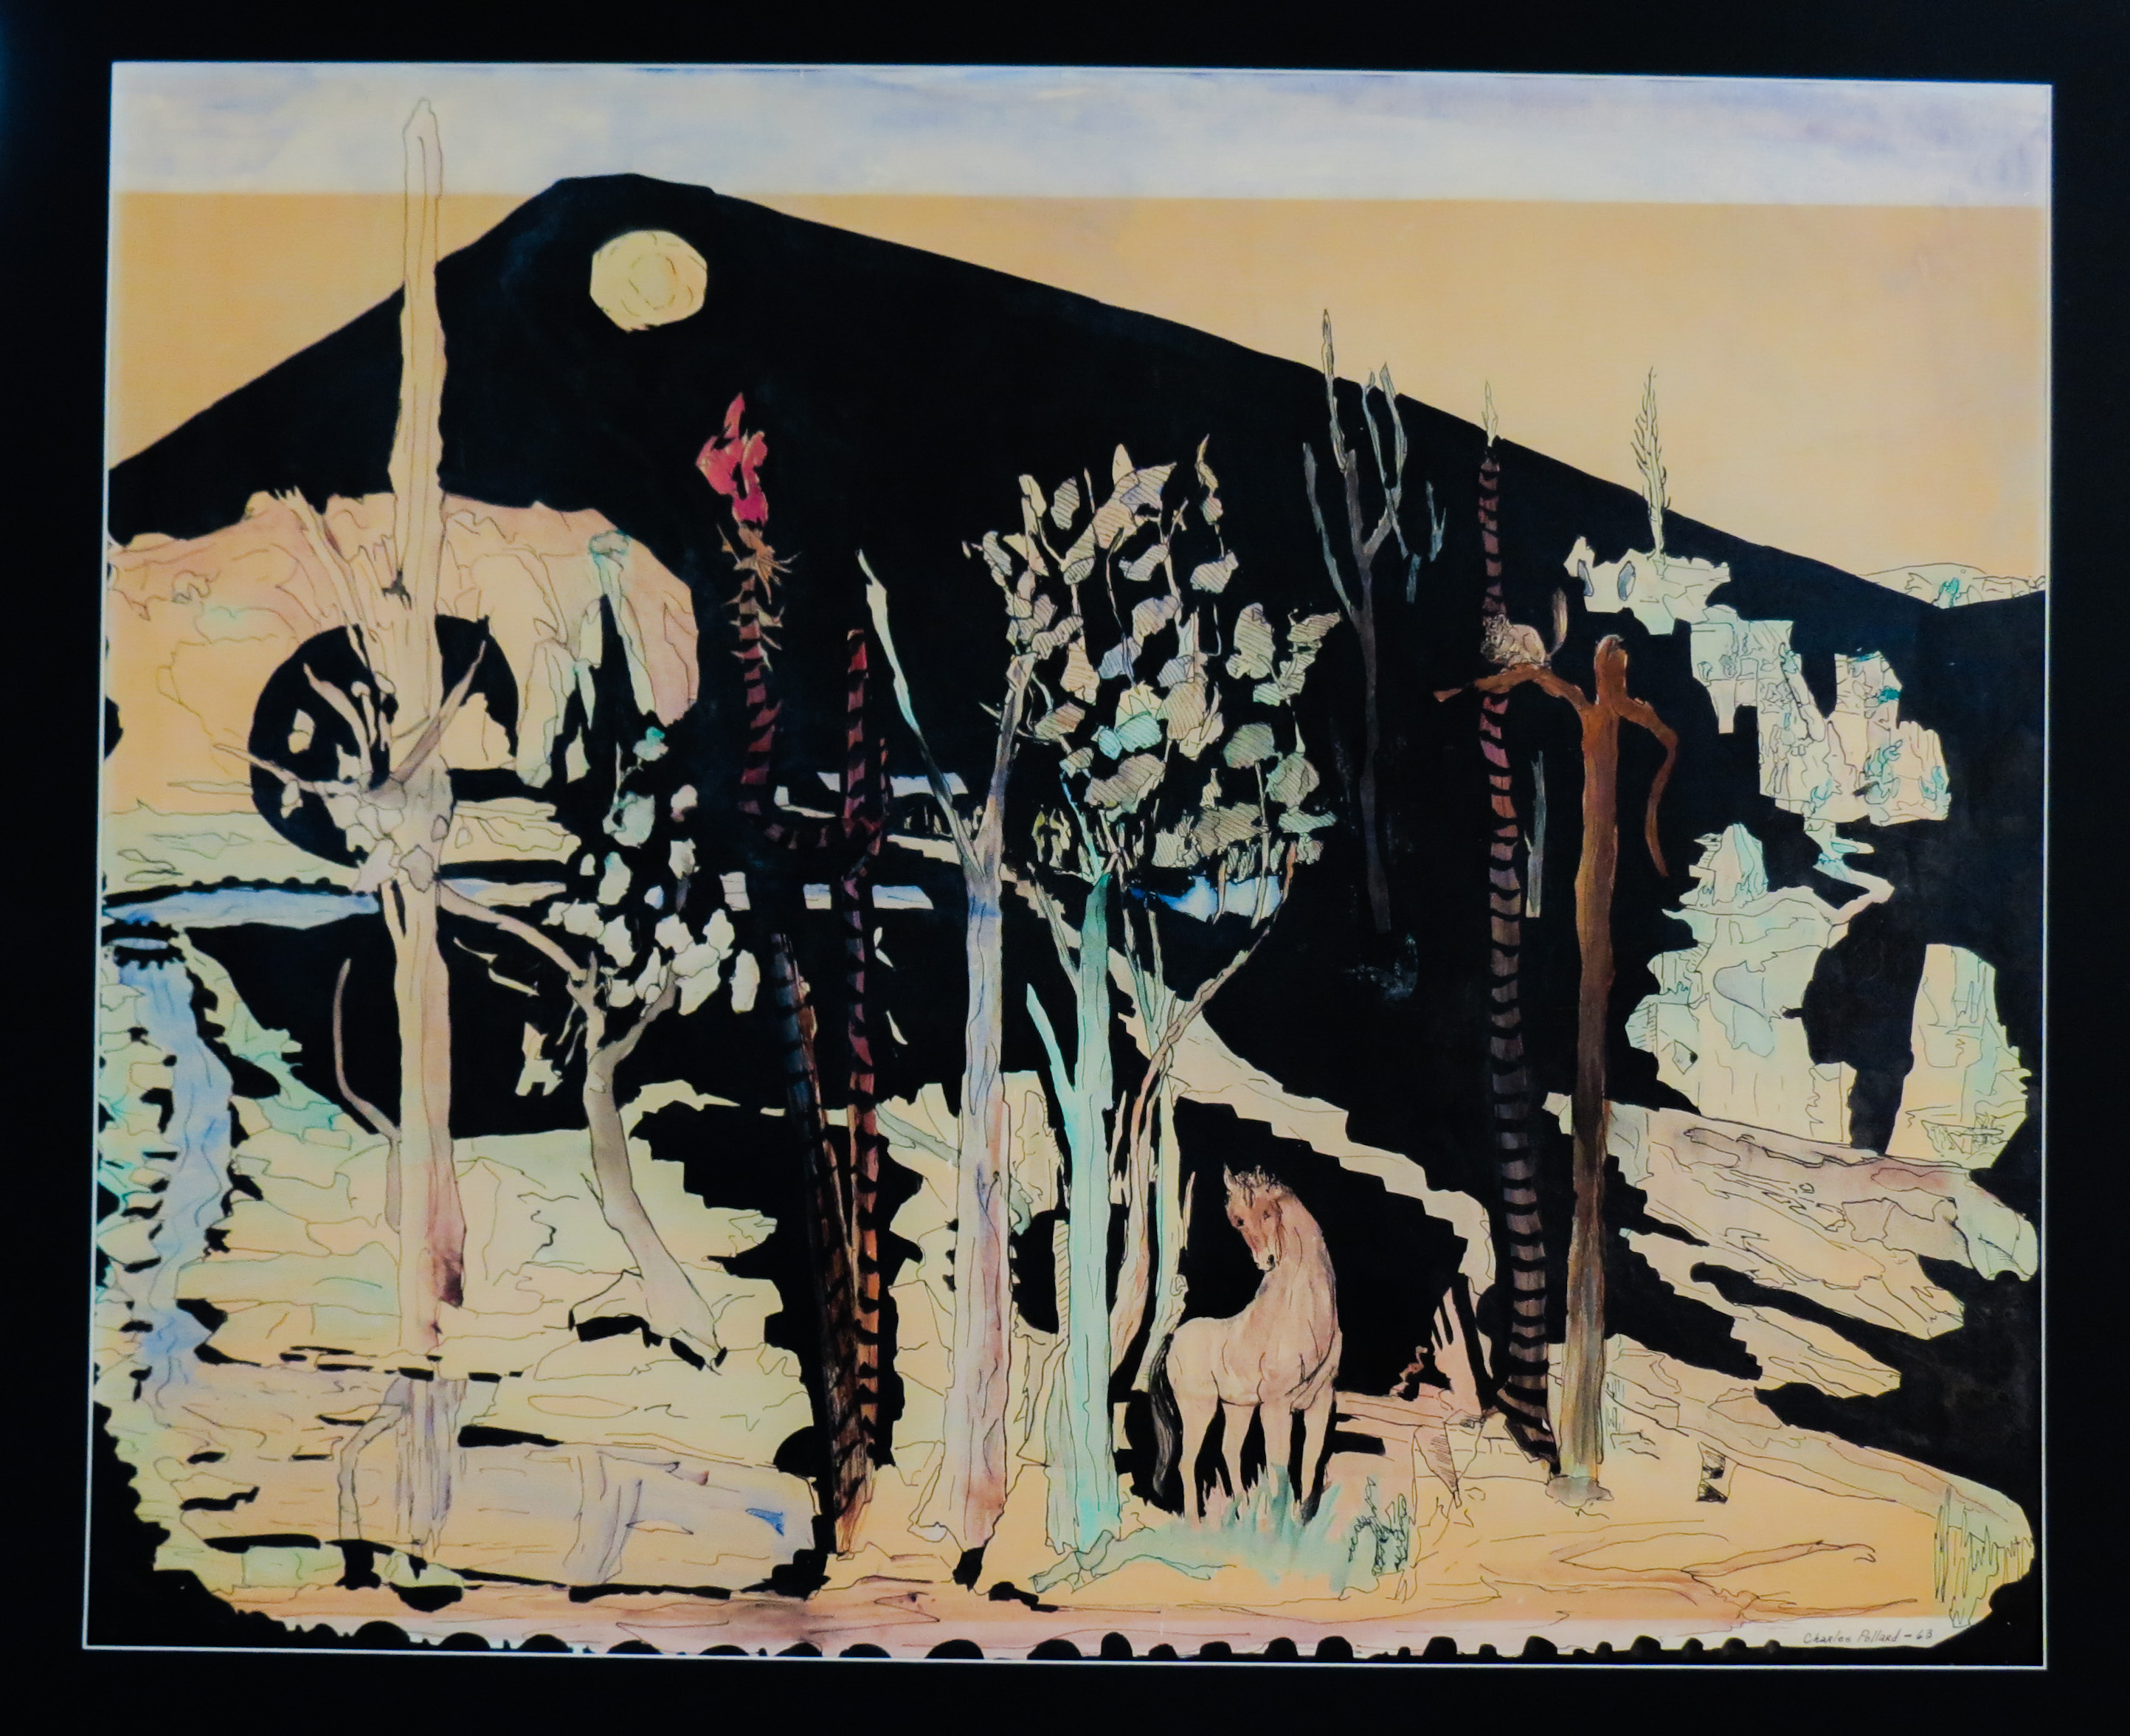 La Solitude de la Nature by Charles William Pollard - années 1960 - 24 x 30 pouces (61 x 76 cm) collection privée